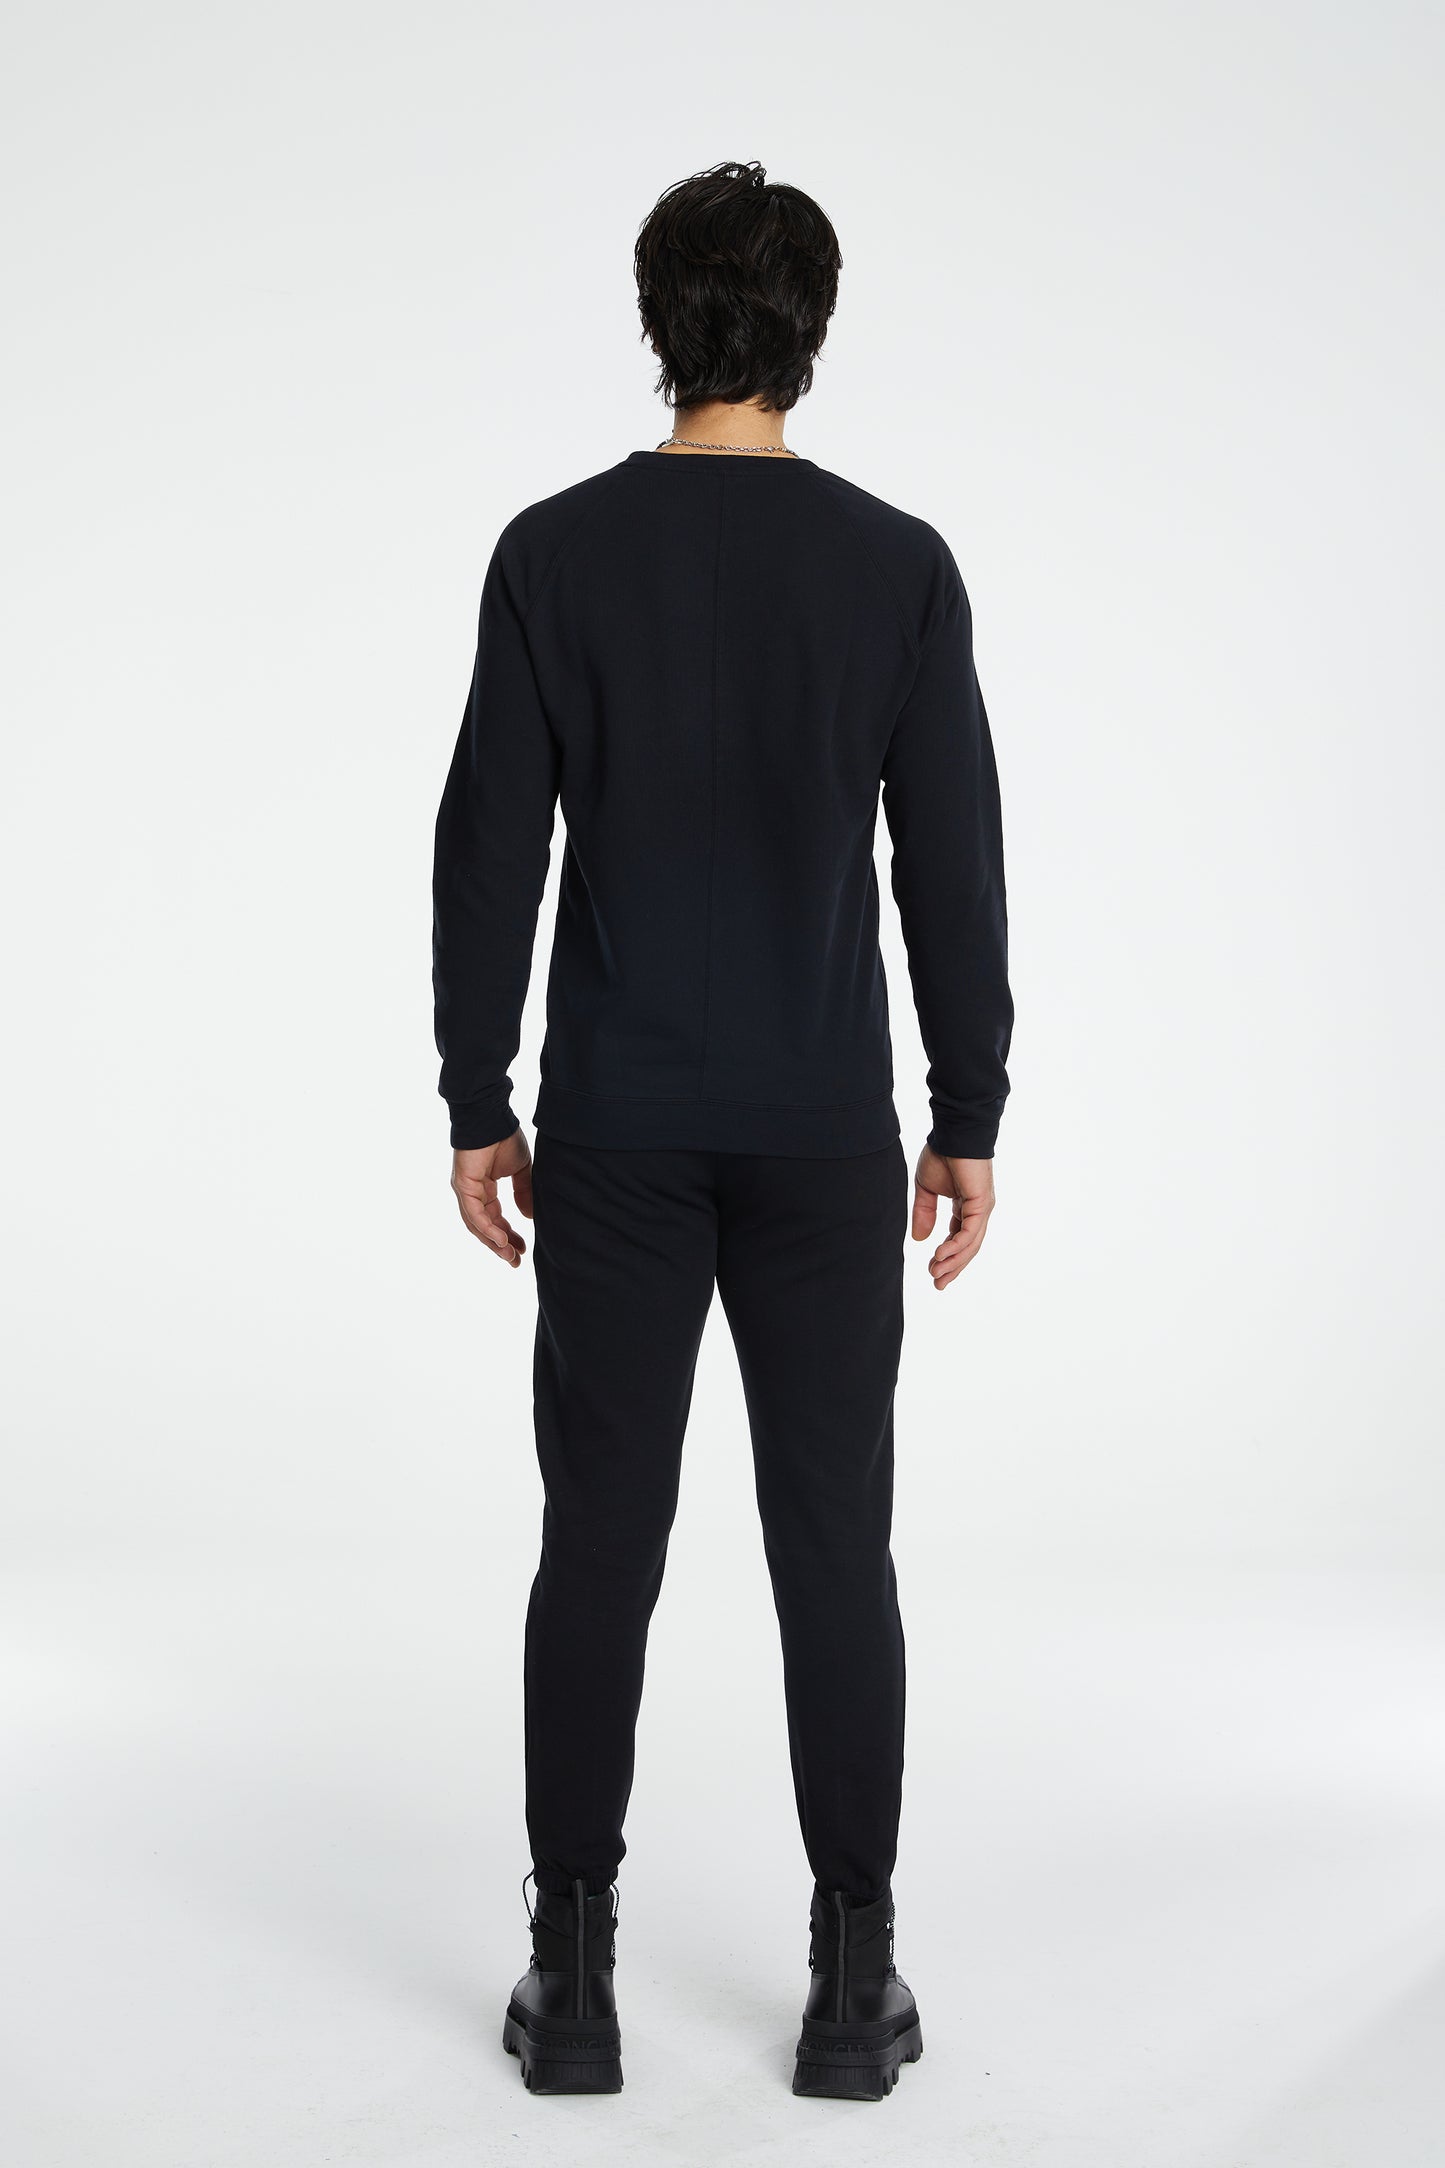 Load image into Gallery viewer, Cotton Crewneck Sweatshirt - Black
